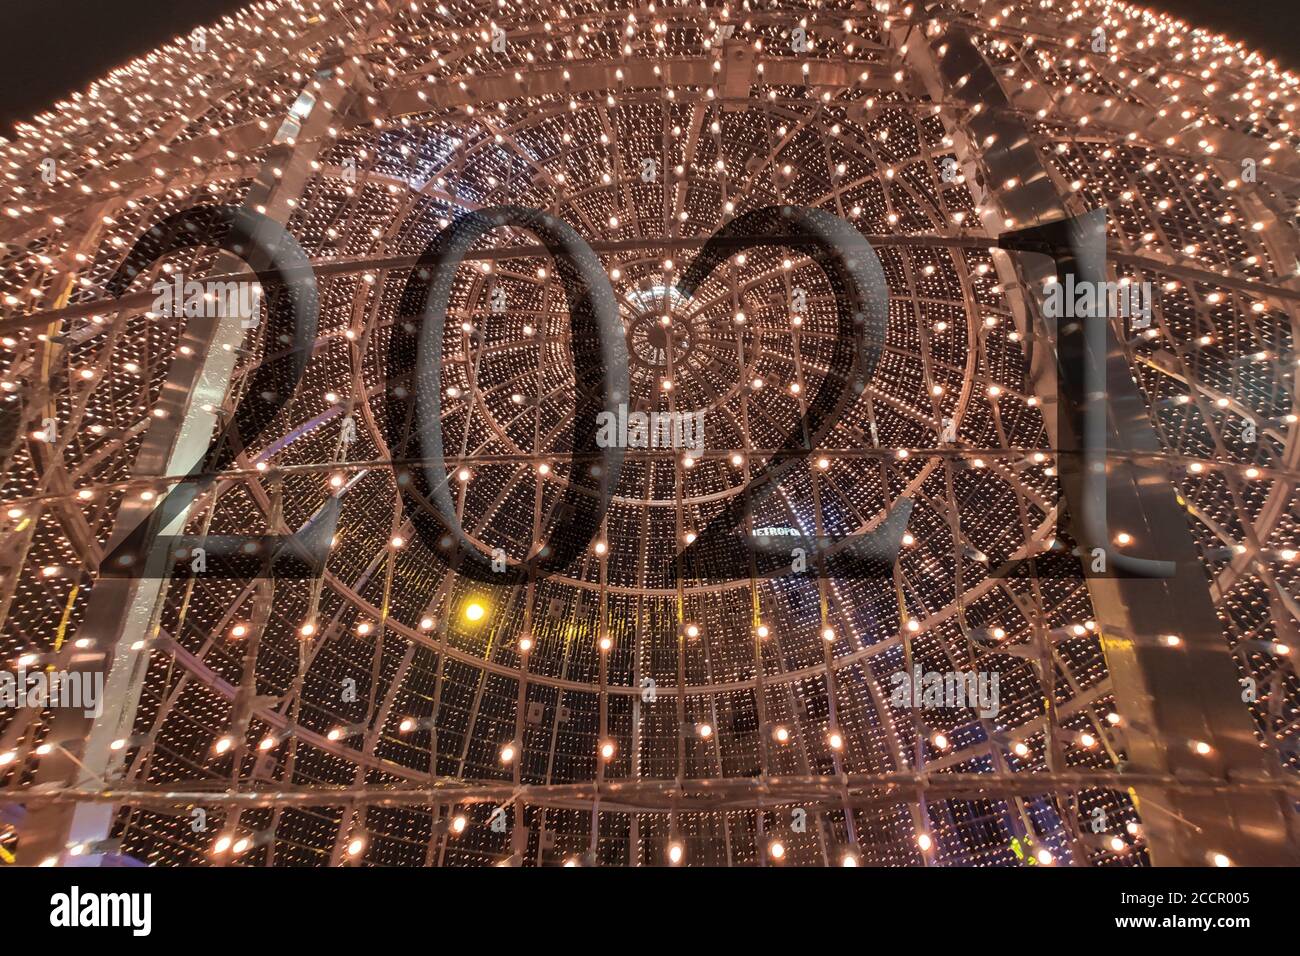 Texte avec le numéro d'année 2021 avec un arrière-plan de lumières bleu clair hors de la mise au point avec effet bokeh. Bonne année 2021. Banque D'Images